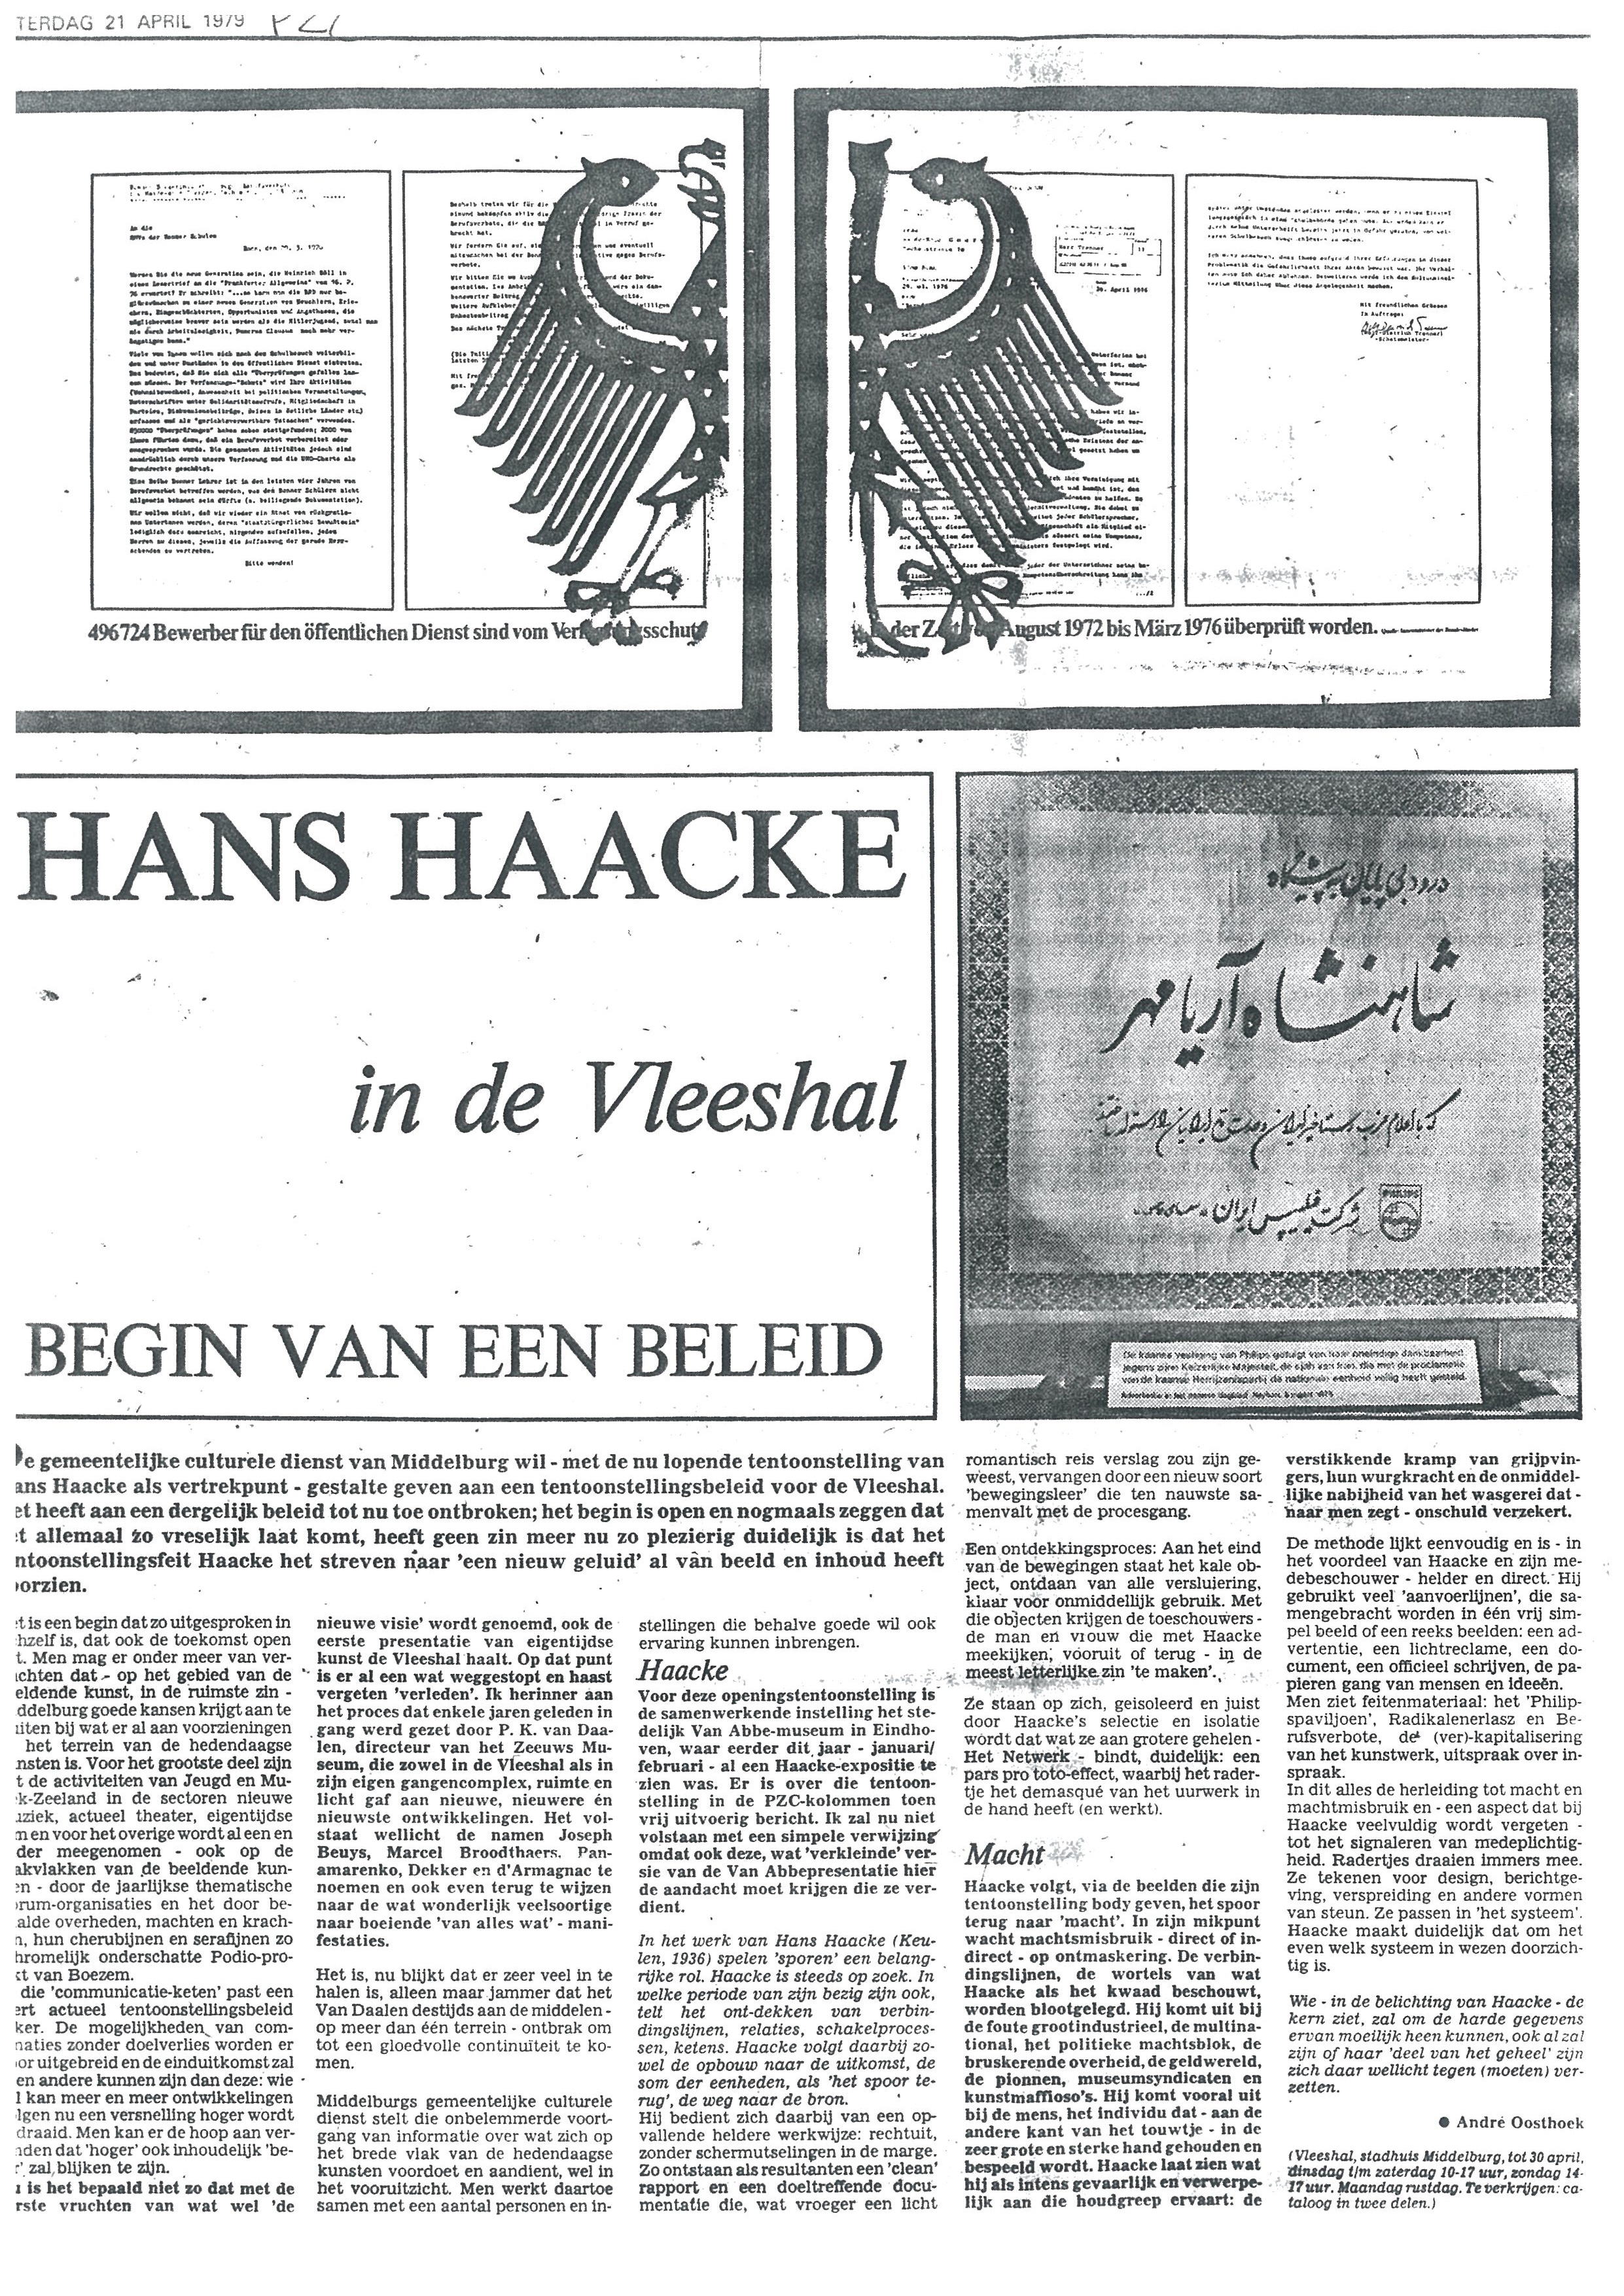 Hans Haacke
Press Release | Begin van een Beeld | Hans Haacke